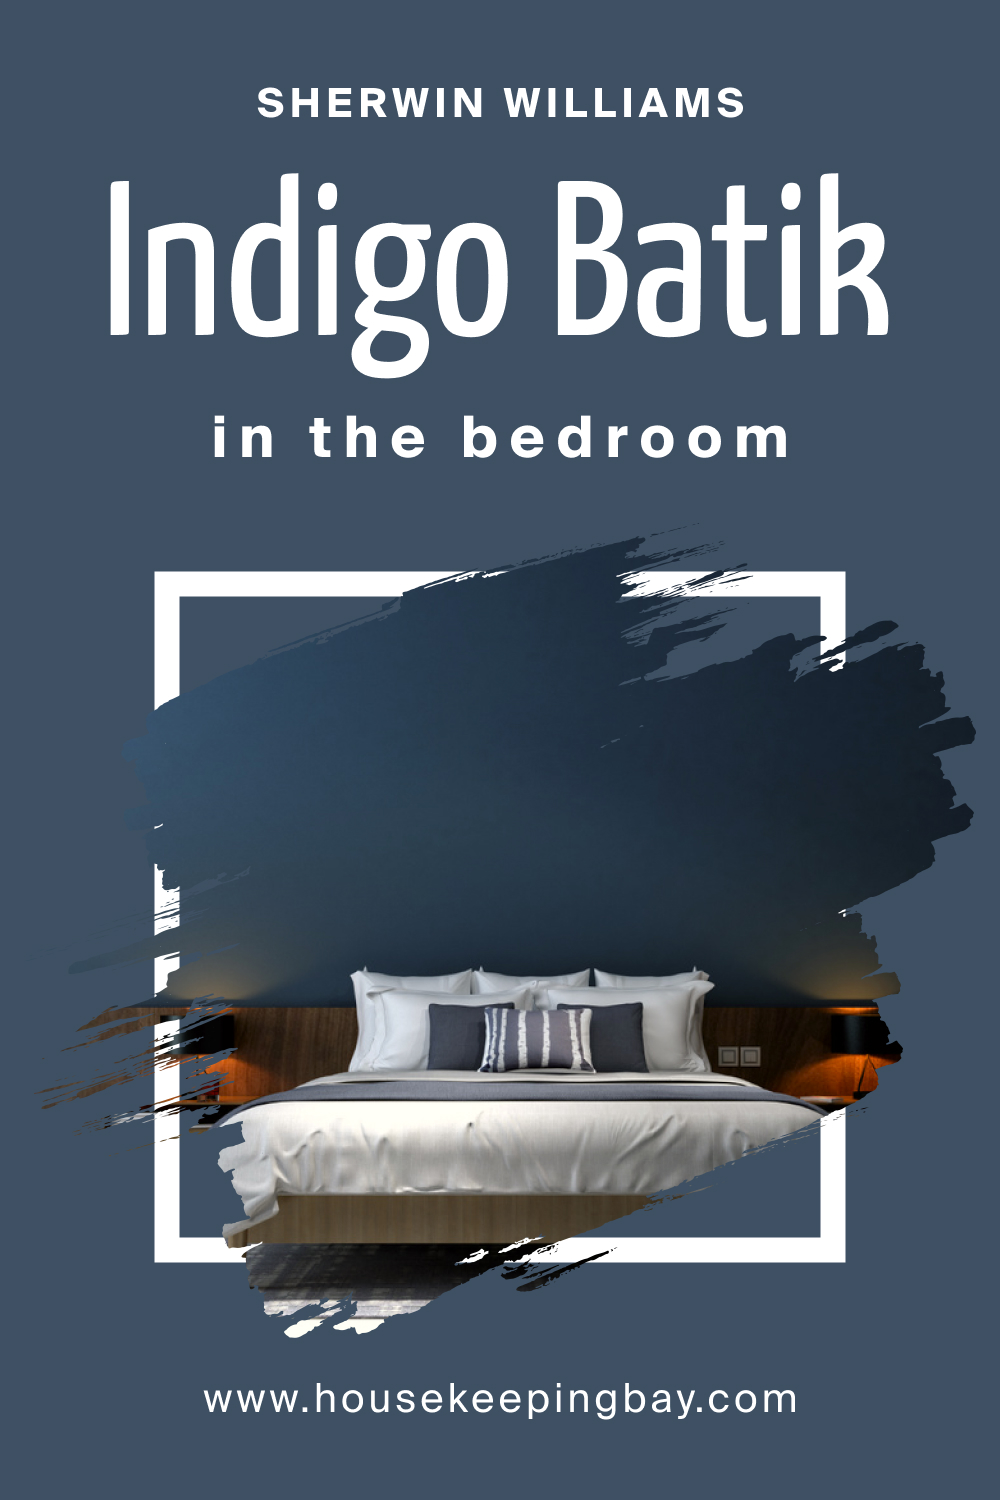 Sherwin Williams. SW 7602 Indigo Batik For the bedroom